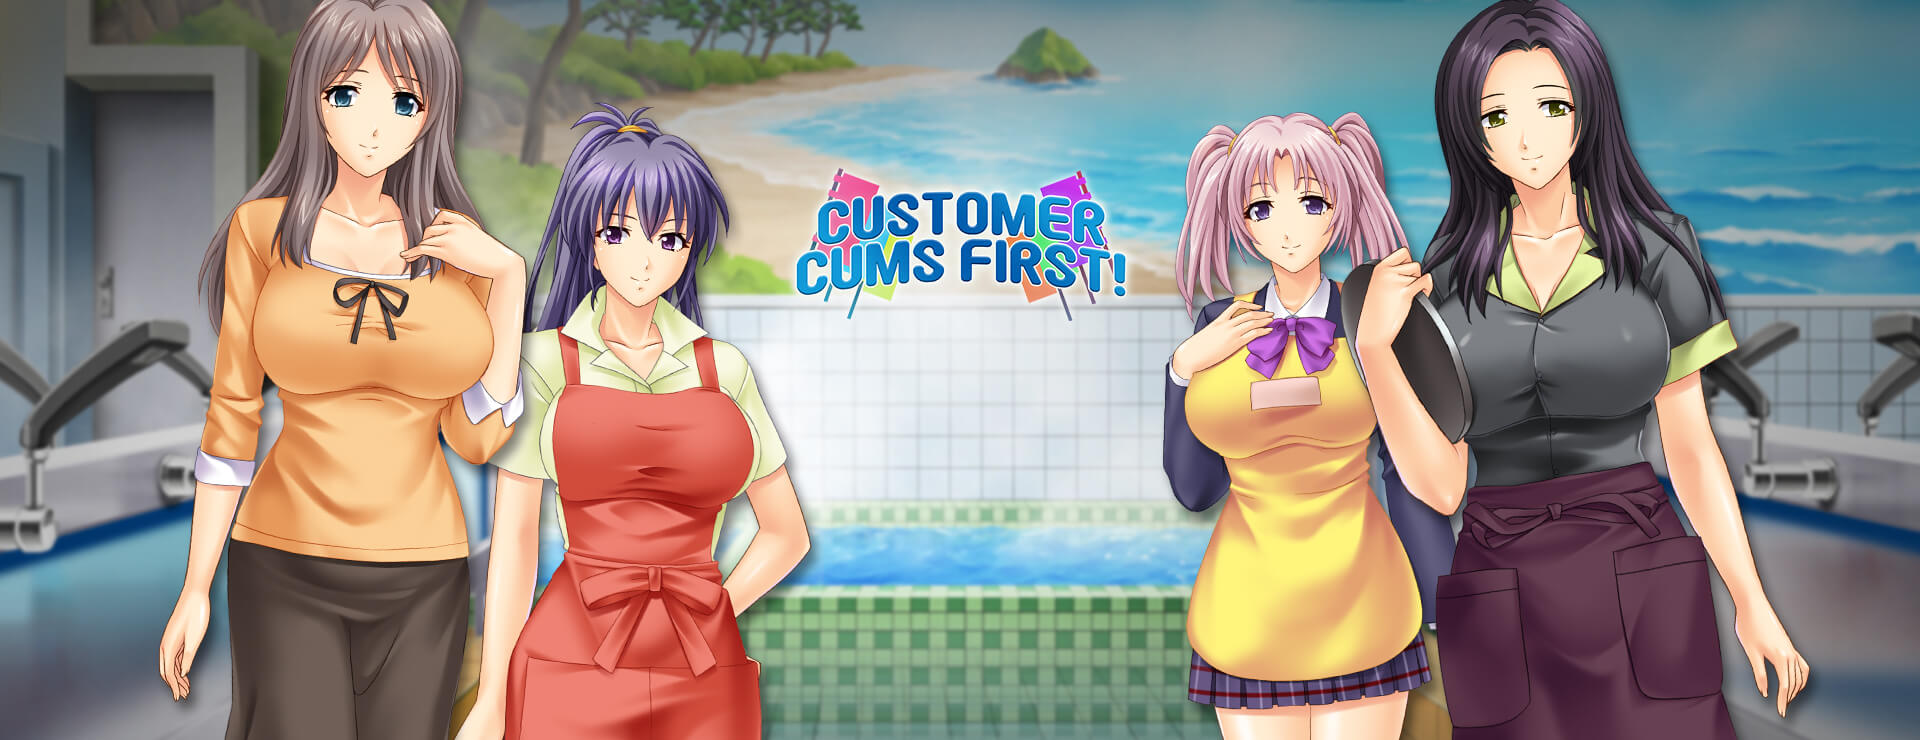 Customer Cums First - Japanisches Adventure Spiel